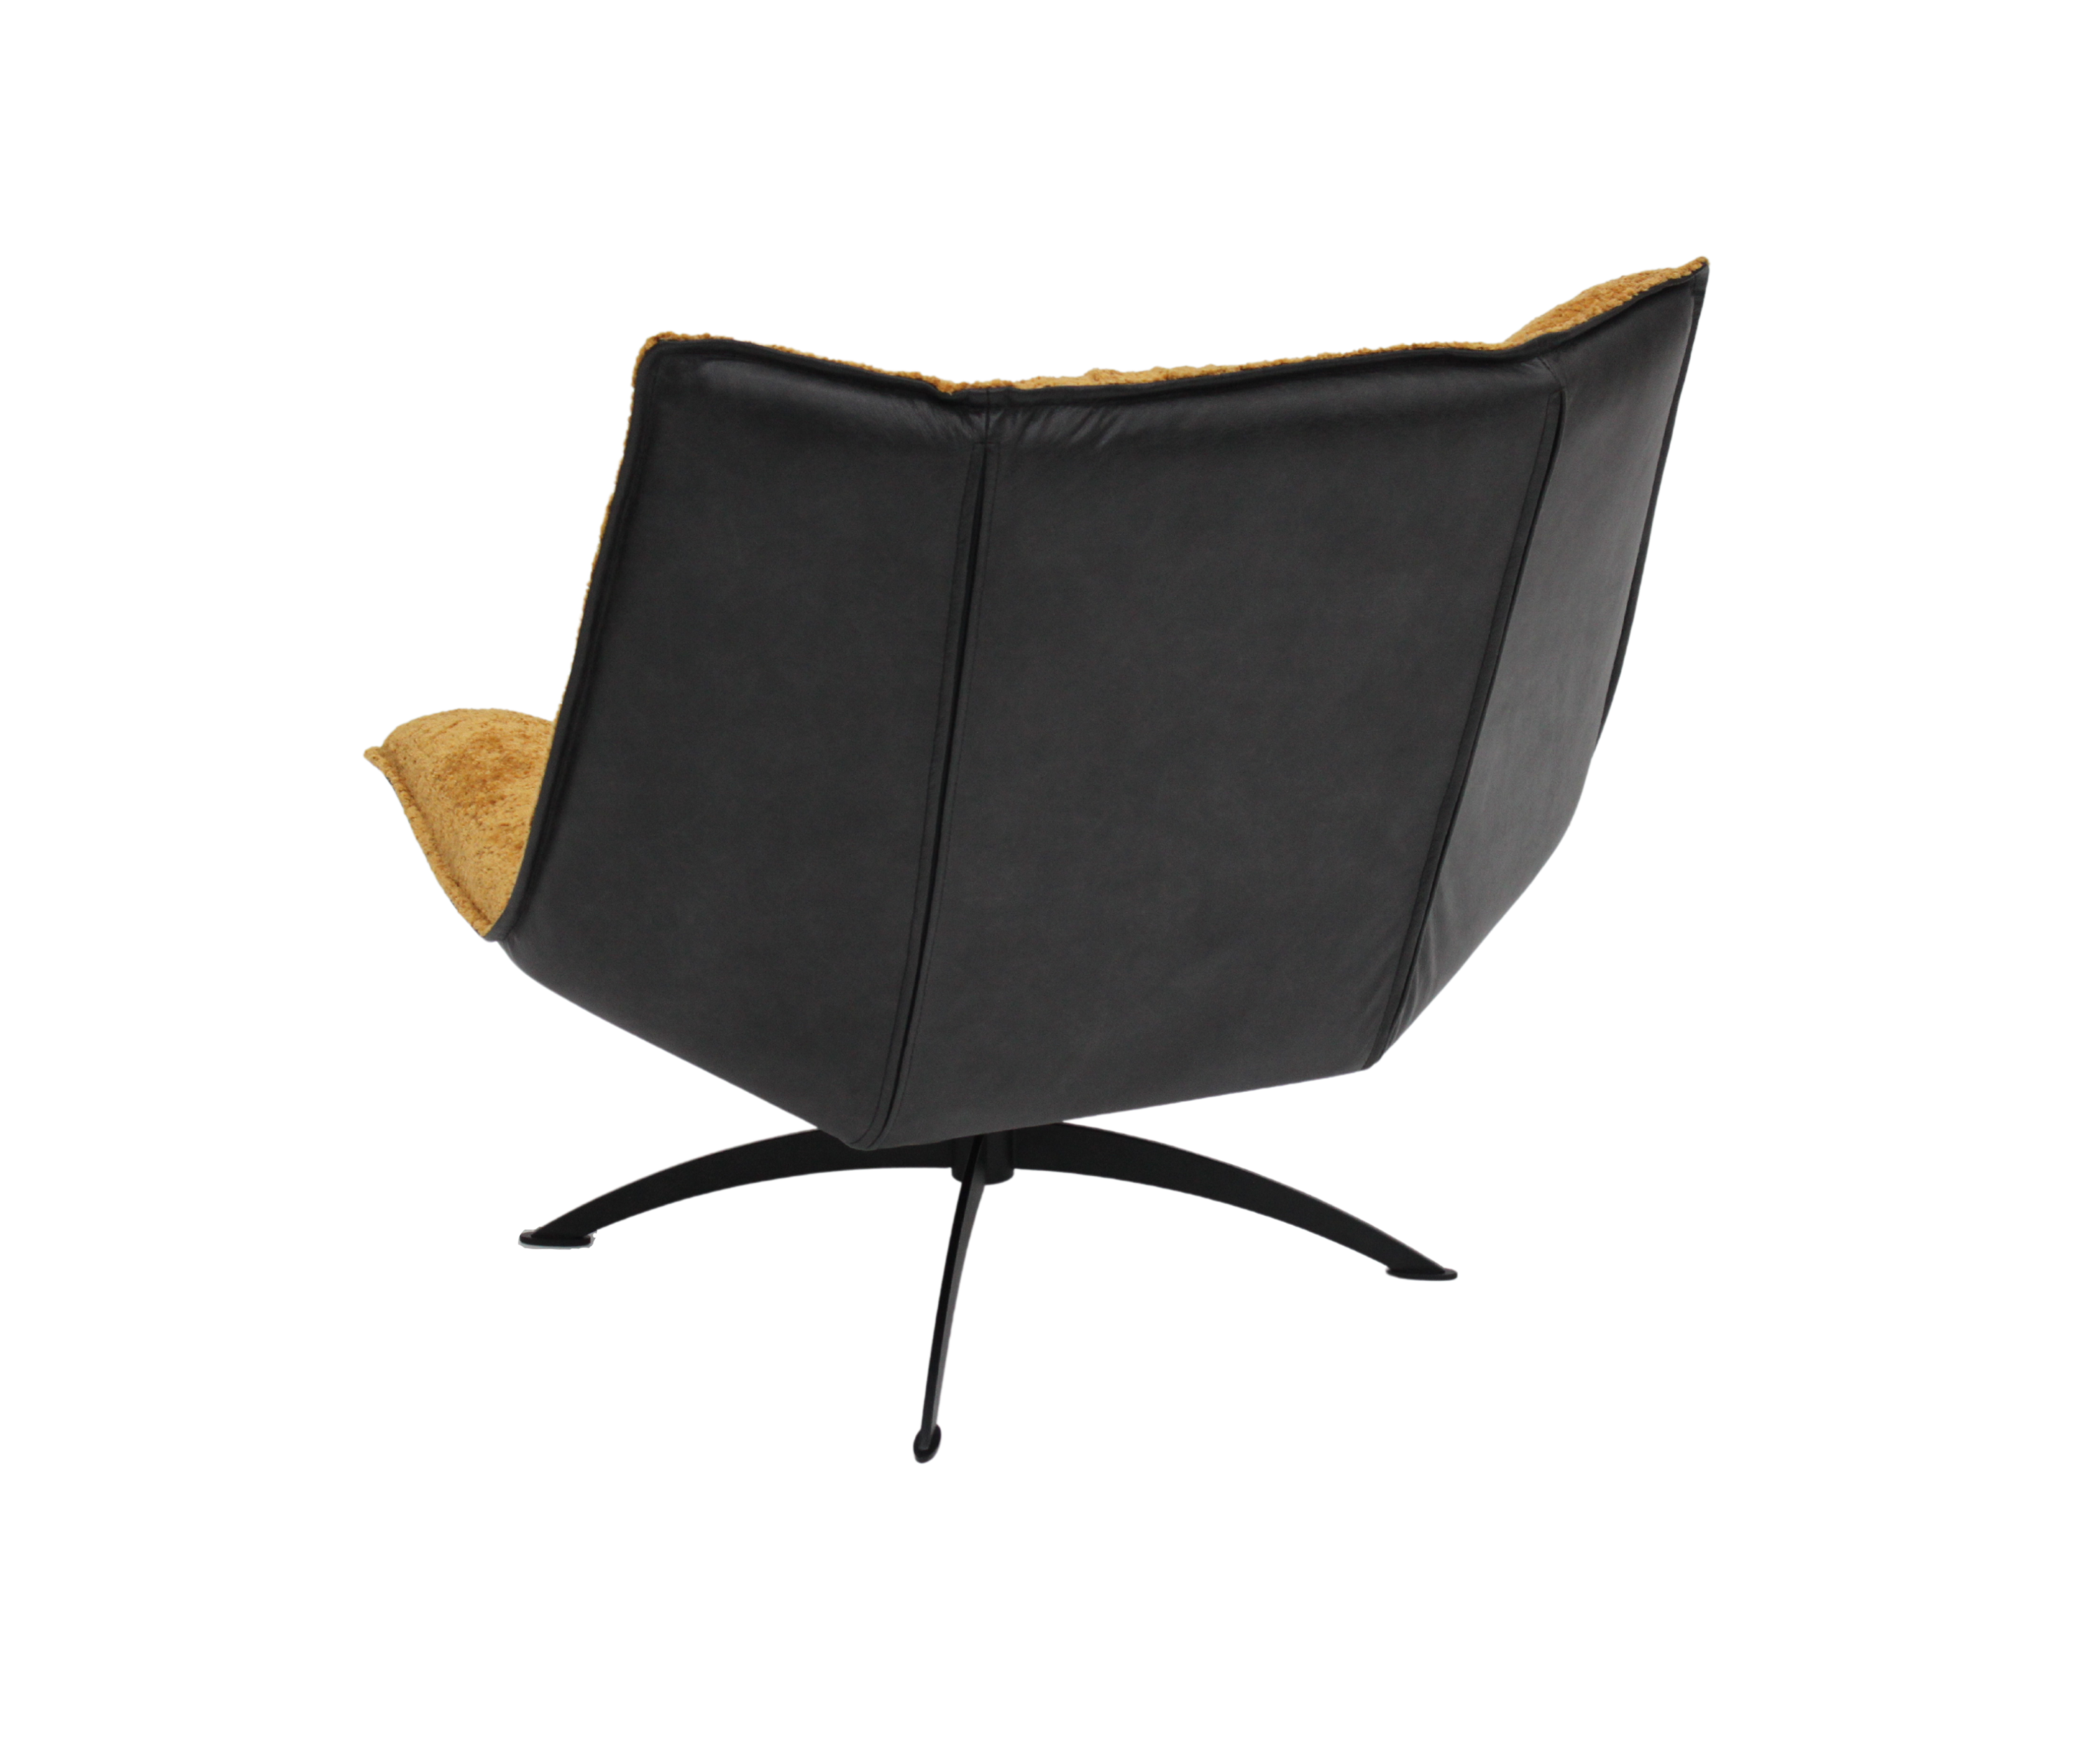 Moderner Lounge Sessel aus Stoff und Stahlbeinen | Modell STEA Amore